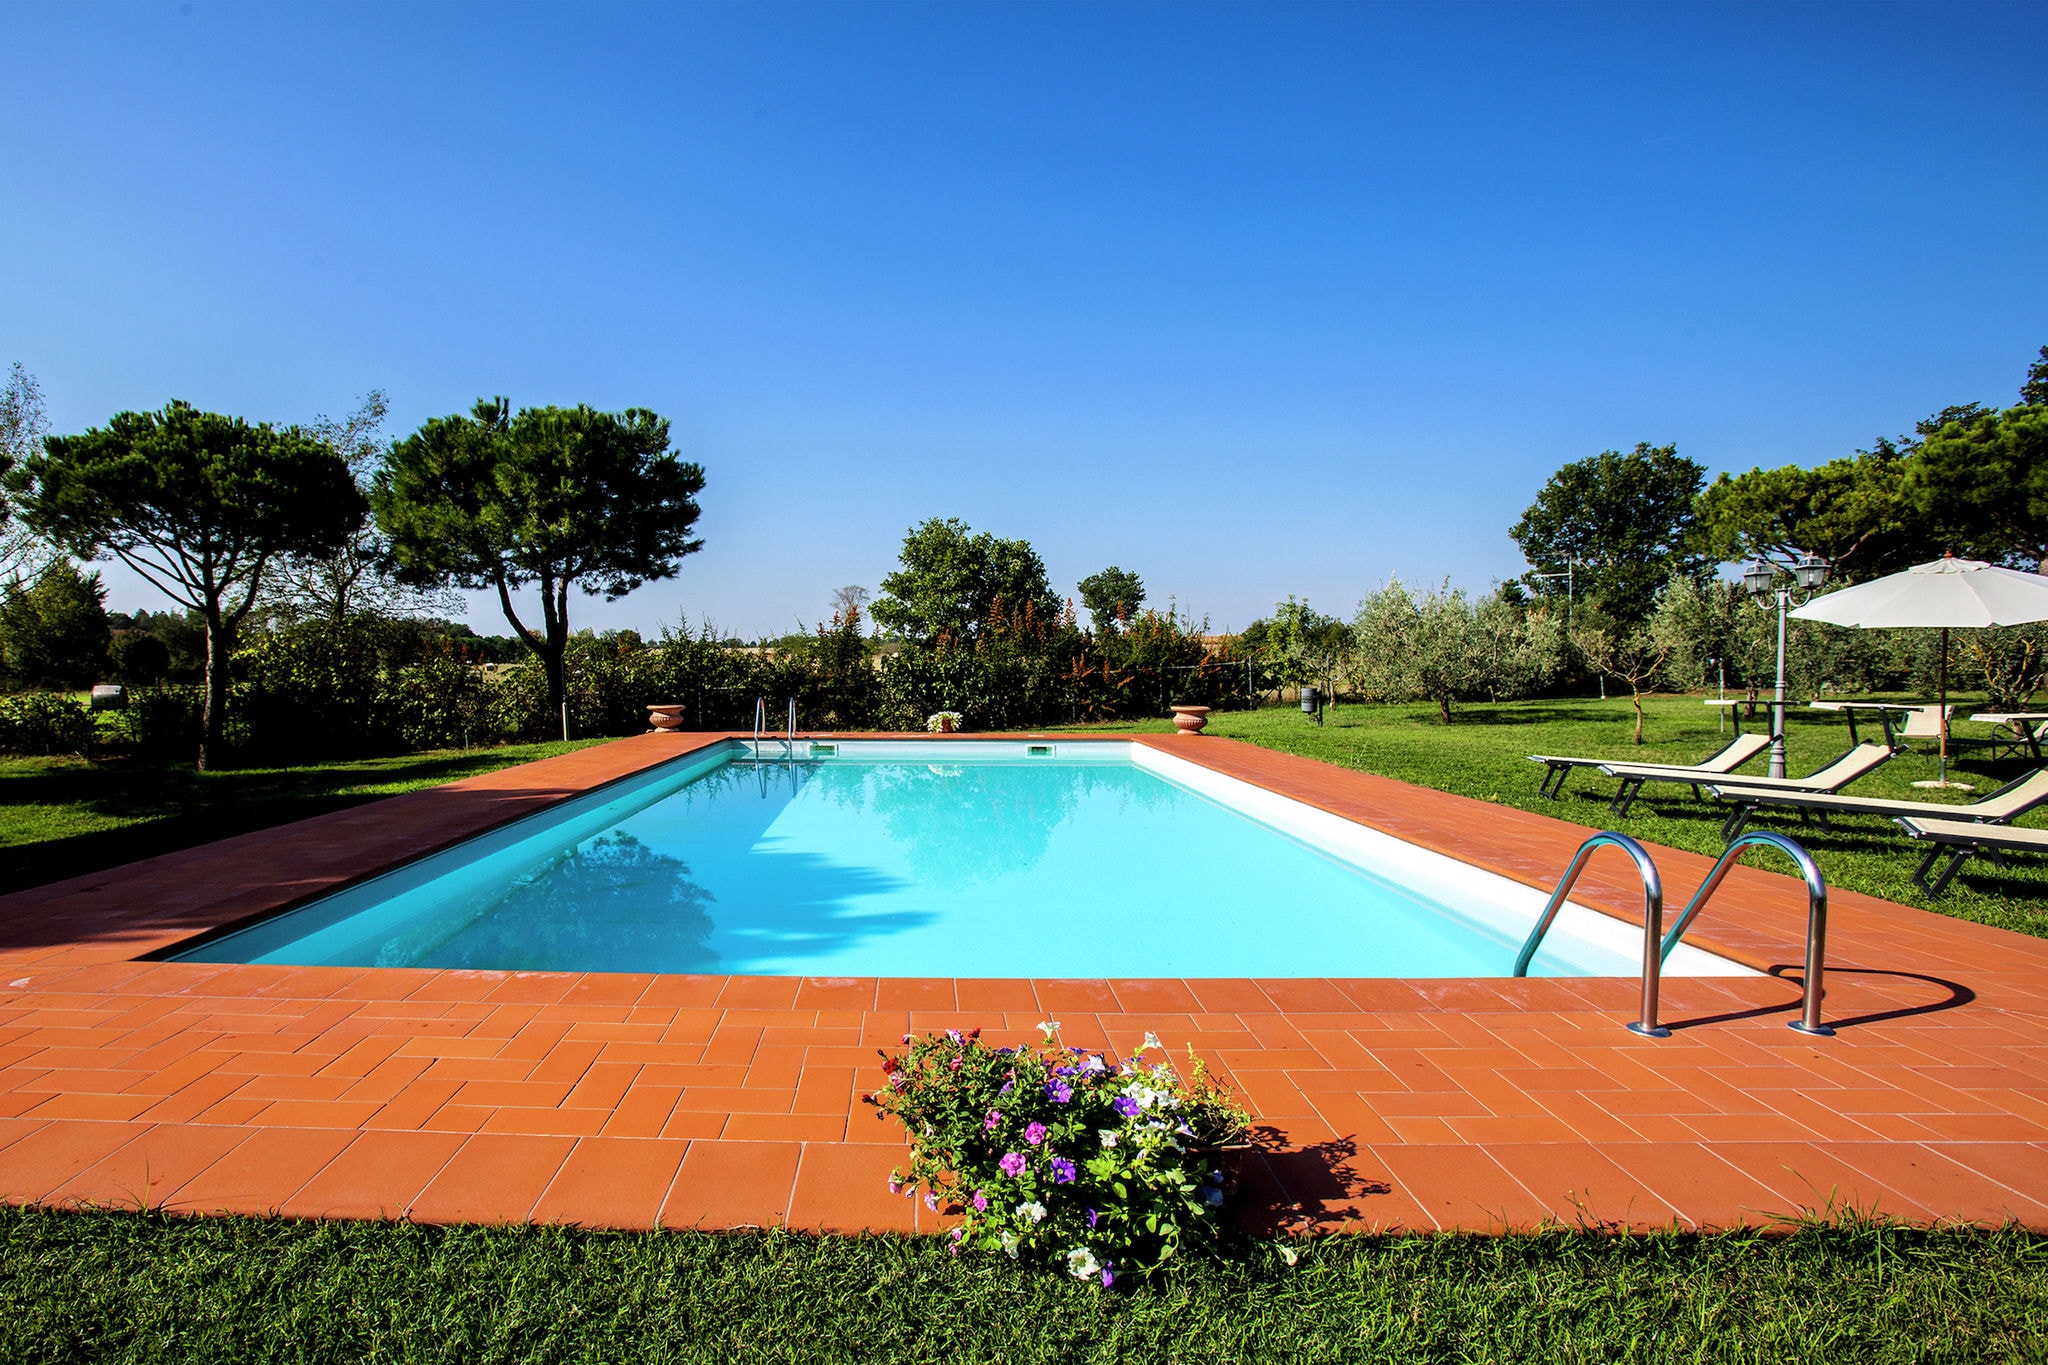 Villa met ruime tuin, privézwembad, bubbelbad en tennisbaan dichtbij Cortona